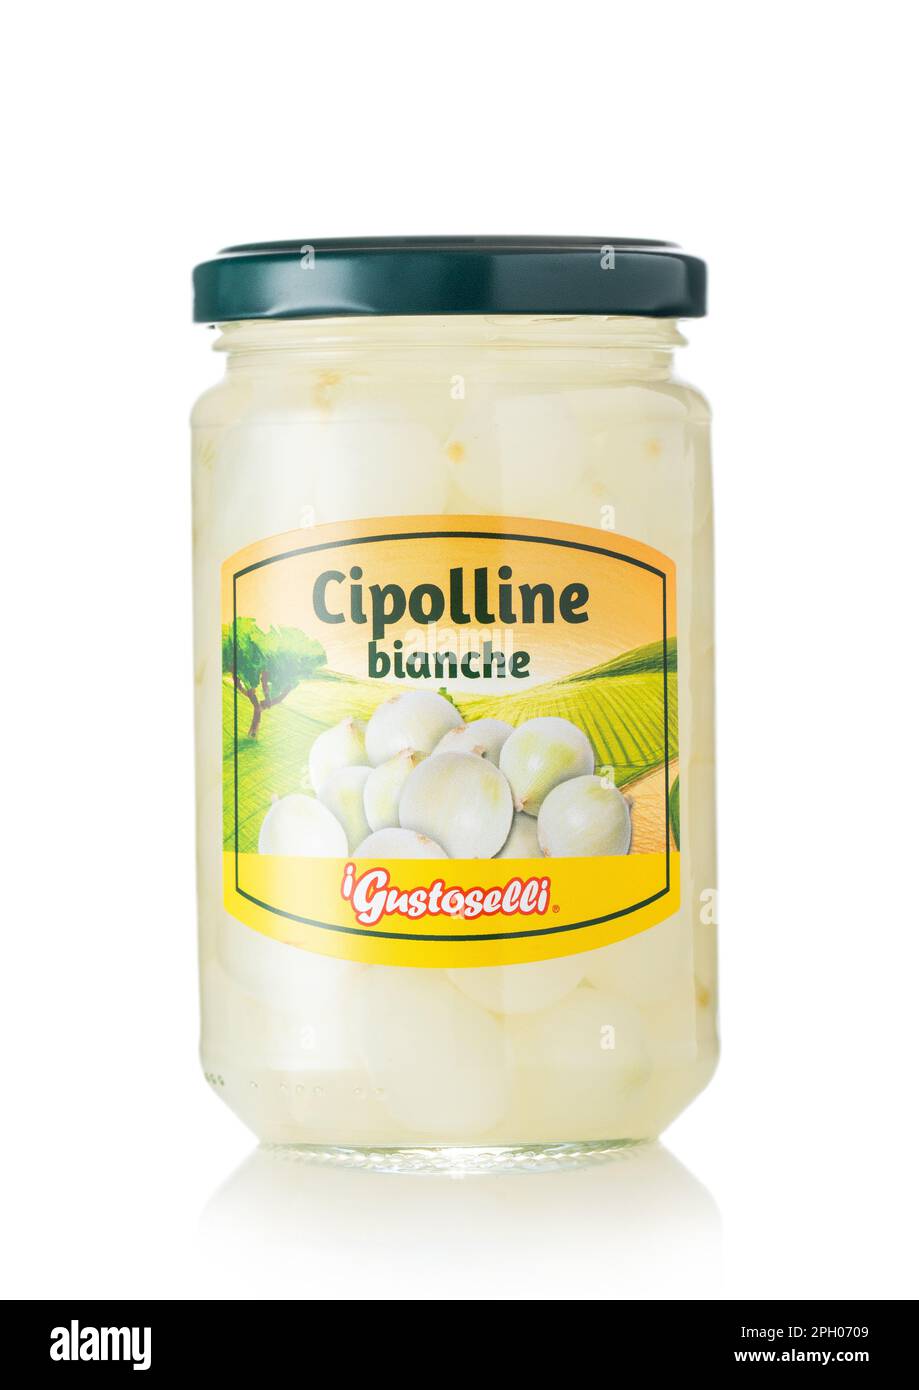 LONDON, Vereinigtes Königreich - 12. MÄRZ 2023: Cipolline Bianche kleine weiße marinierte Zwiebeln in einem Glas auf Weiß. Stockfoto